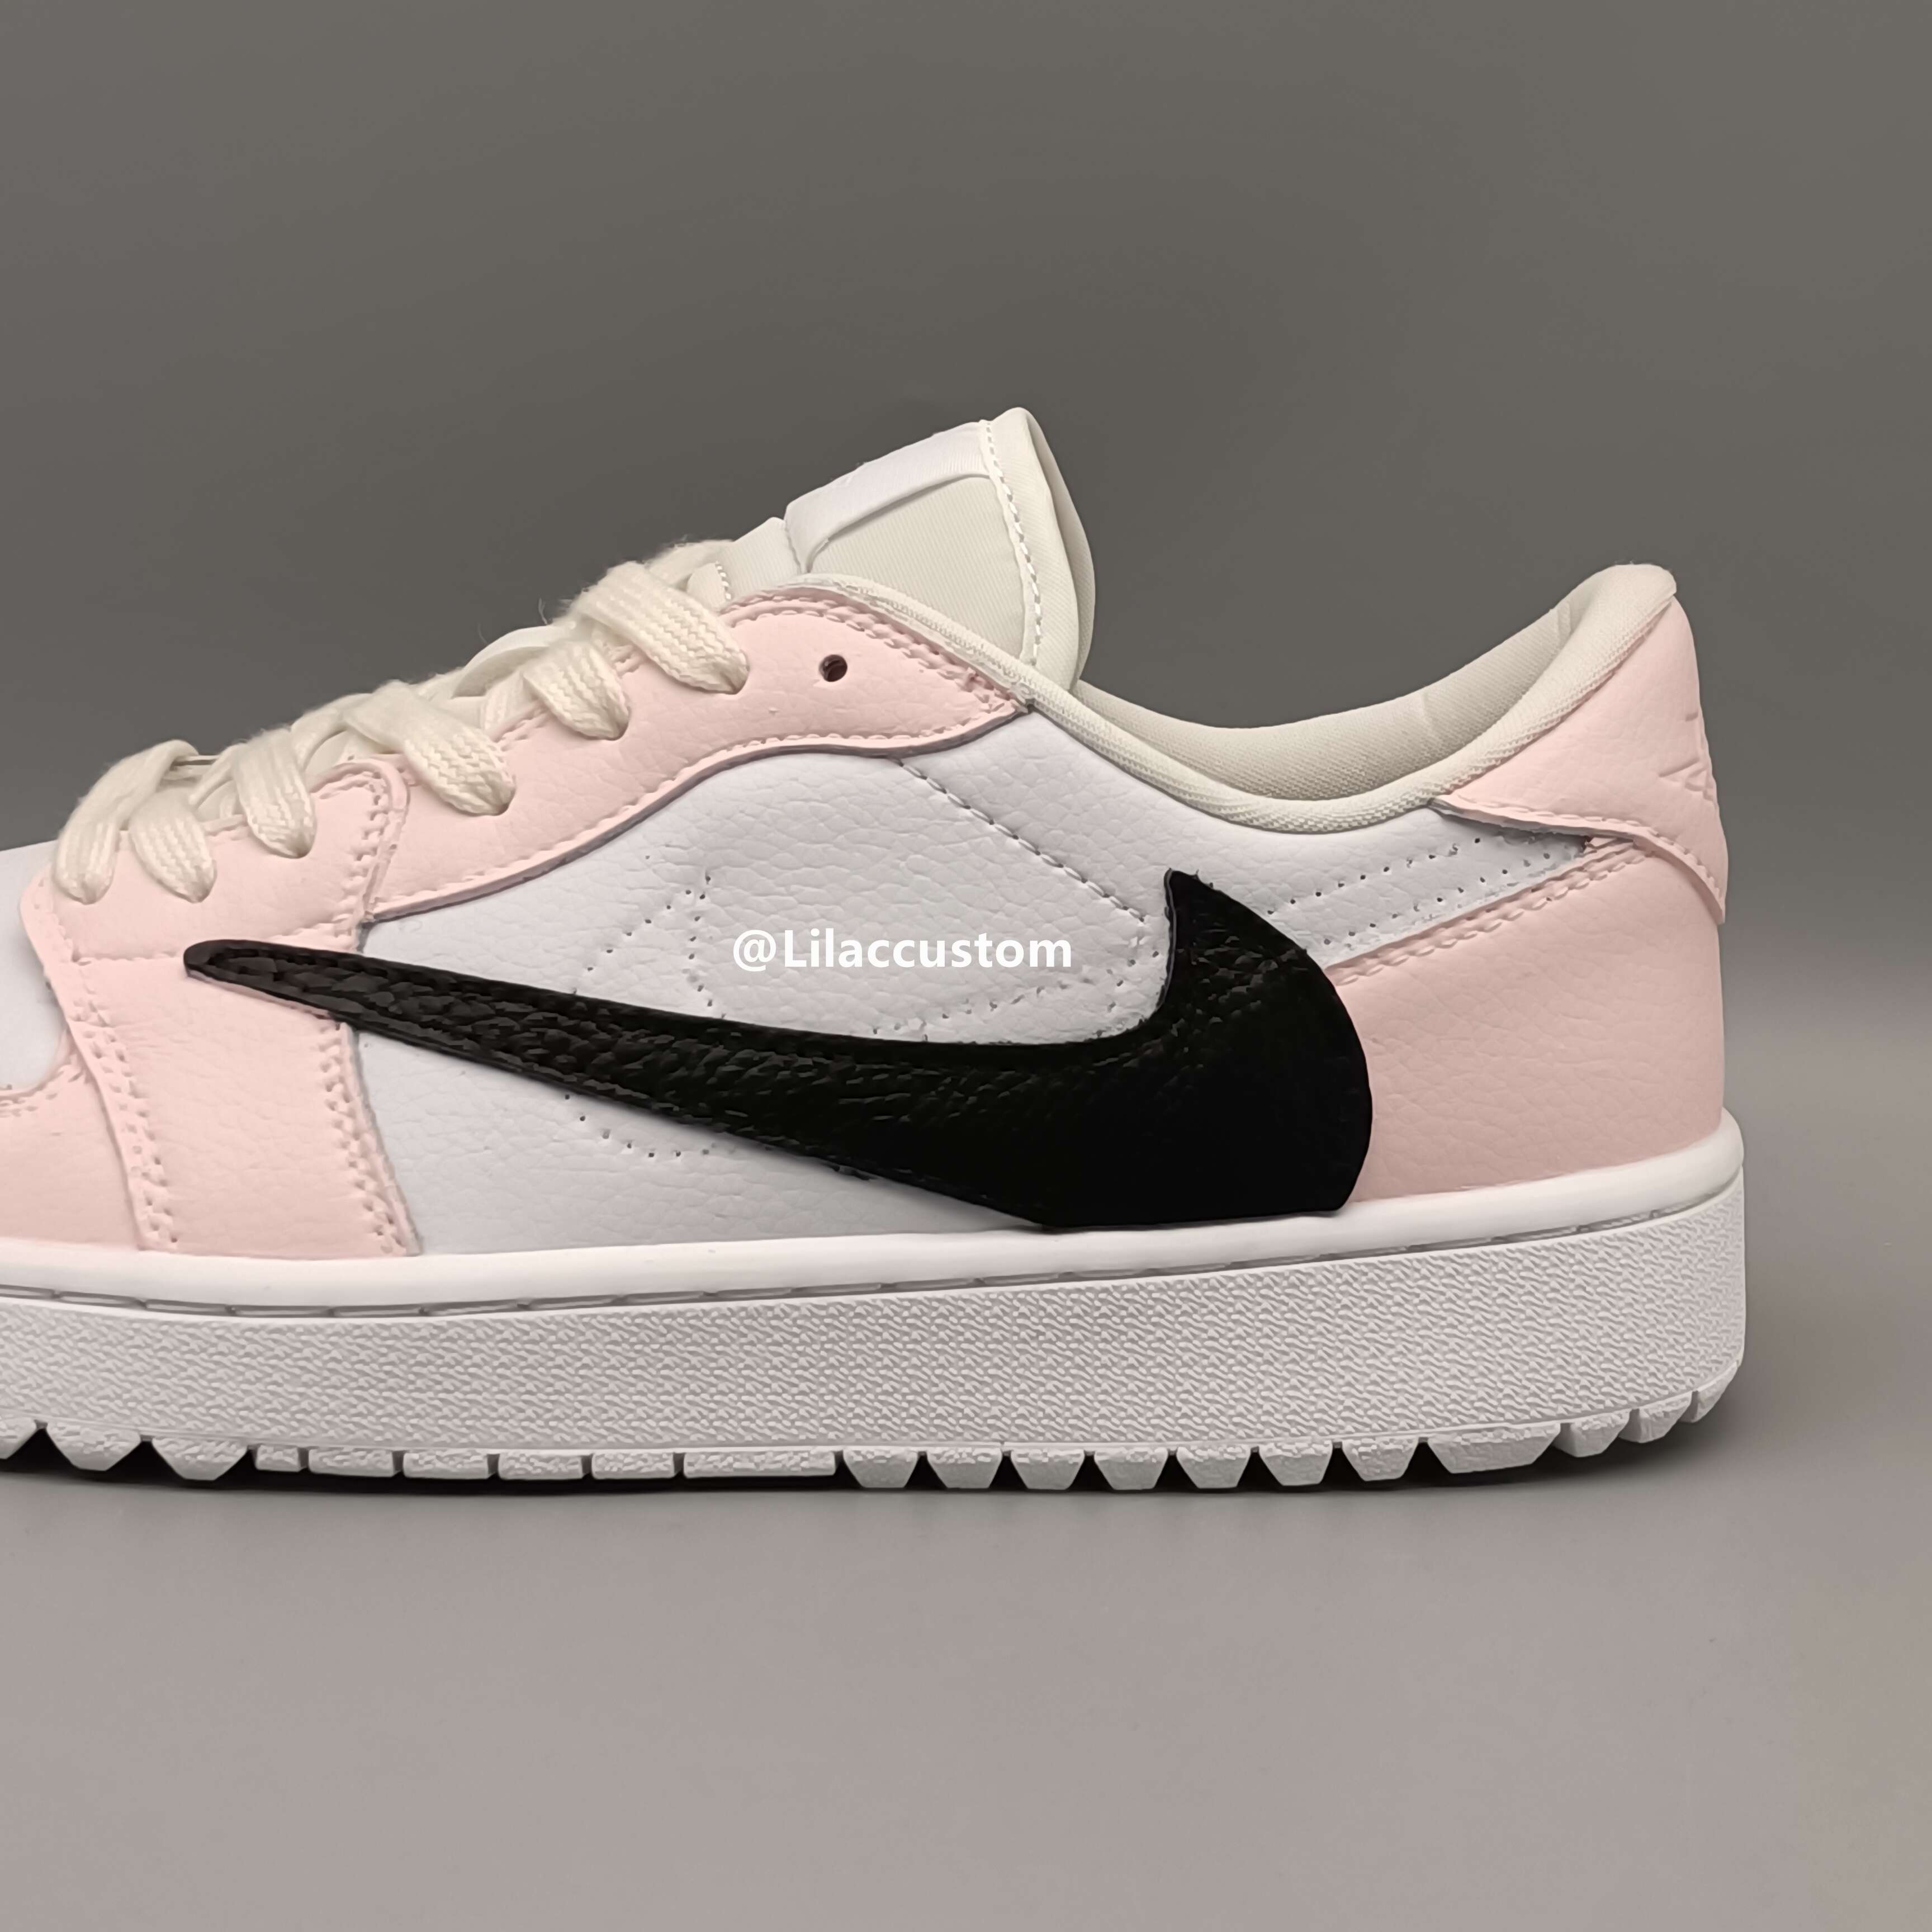 Nike Air Jordan 1 Low Pink Black Reversion Swoosh Custom